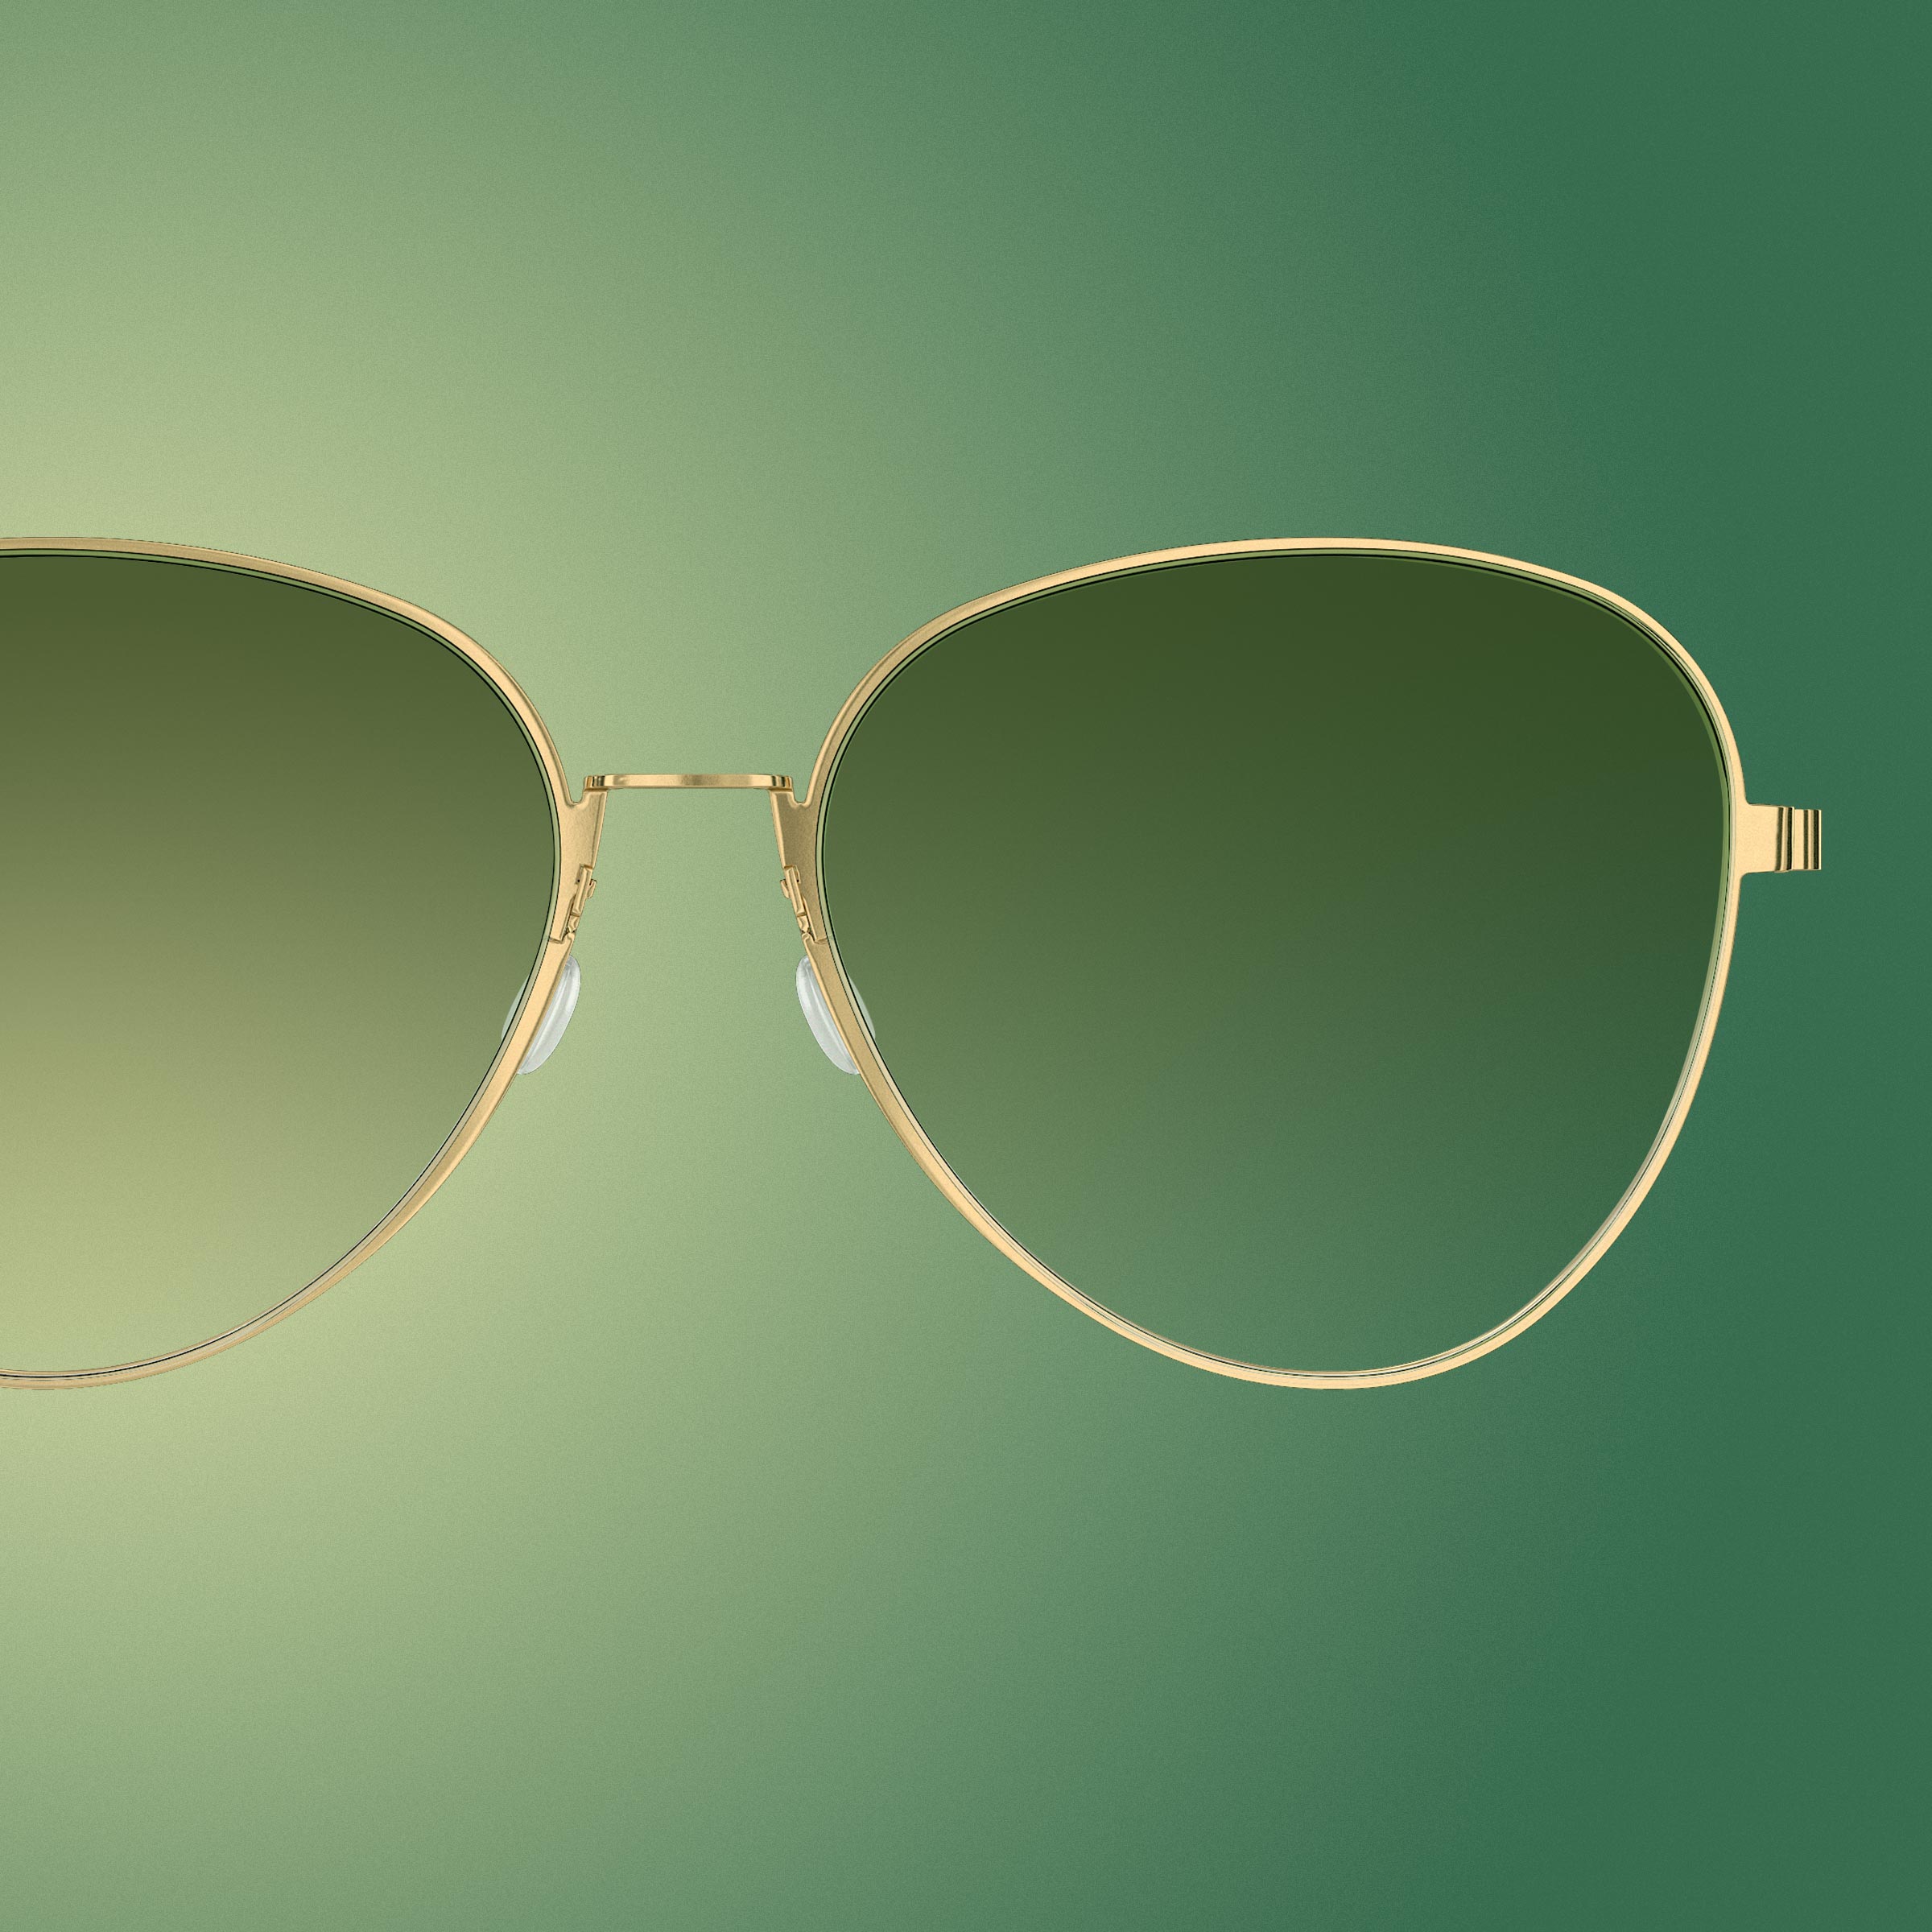 IDEAT-Magazinseite mit LINDBERG-Pilotenbrille mit goldener Titanfassung und grün getönten Gläsern mit Farbverlauf, Modell 8908 PGT